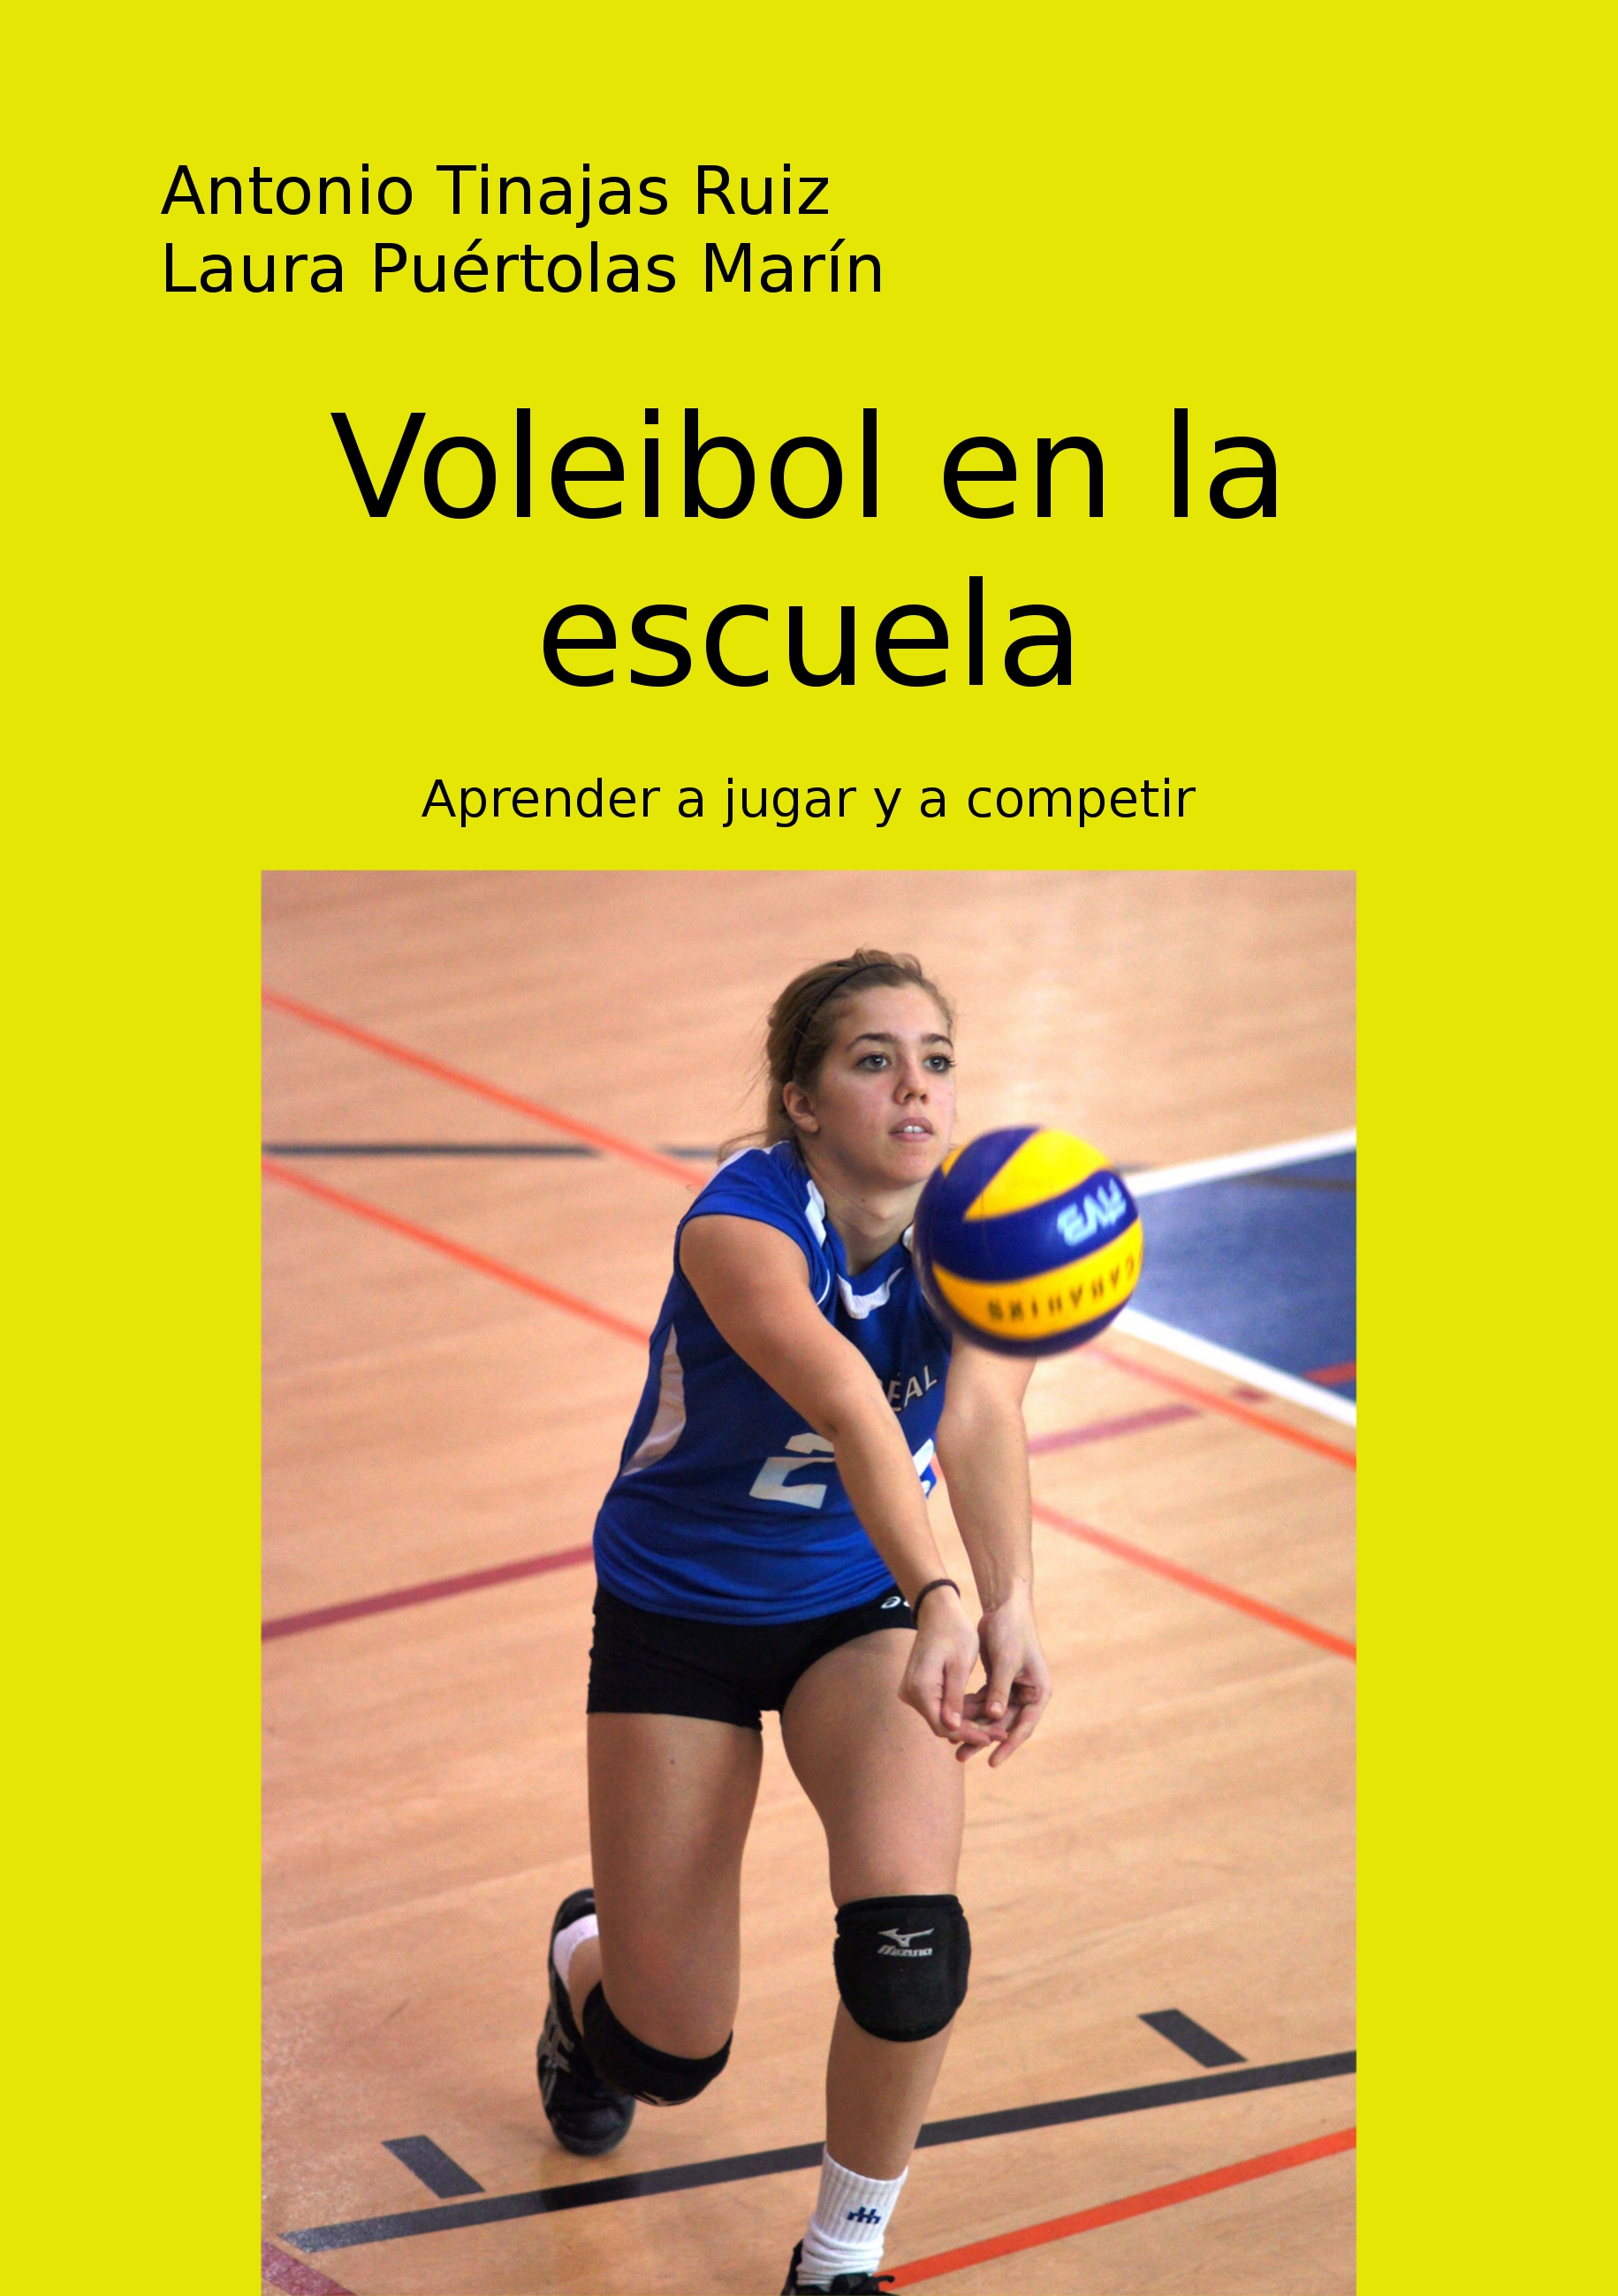 Voleibol en la escuela | Blog de Antonio Tinajas Ruiz